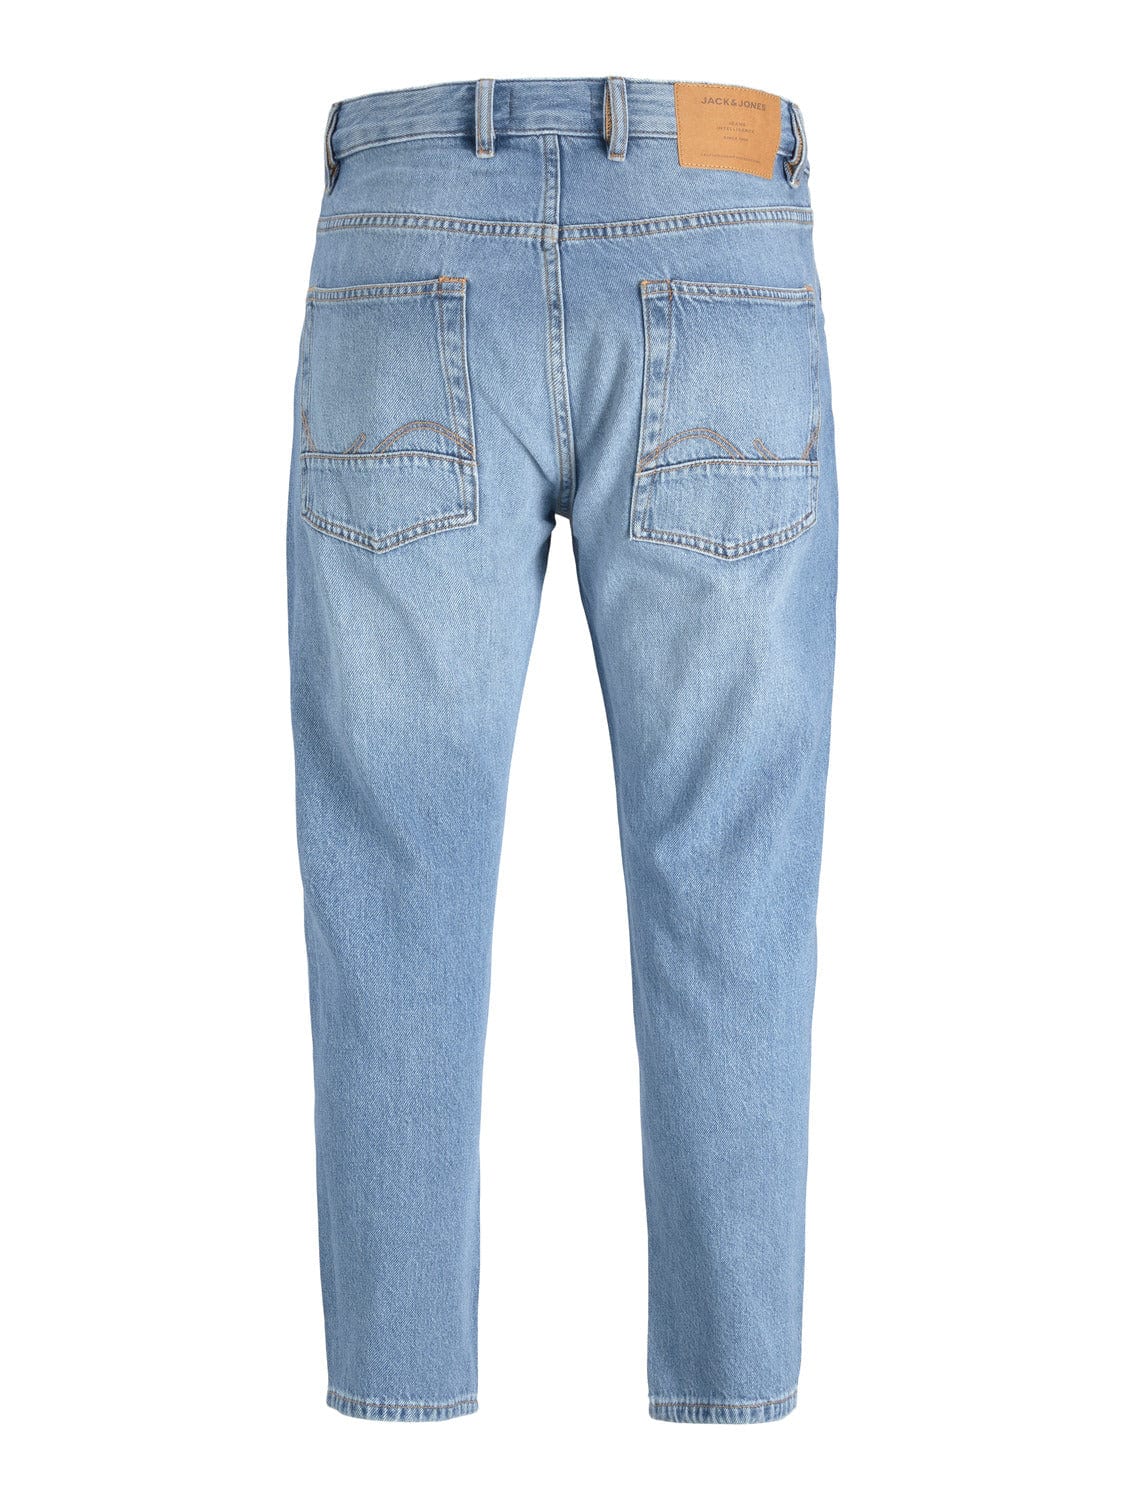 Pantalones vaqueros con rotos azules - JJIFRANK 083